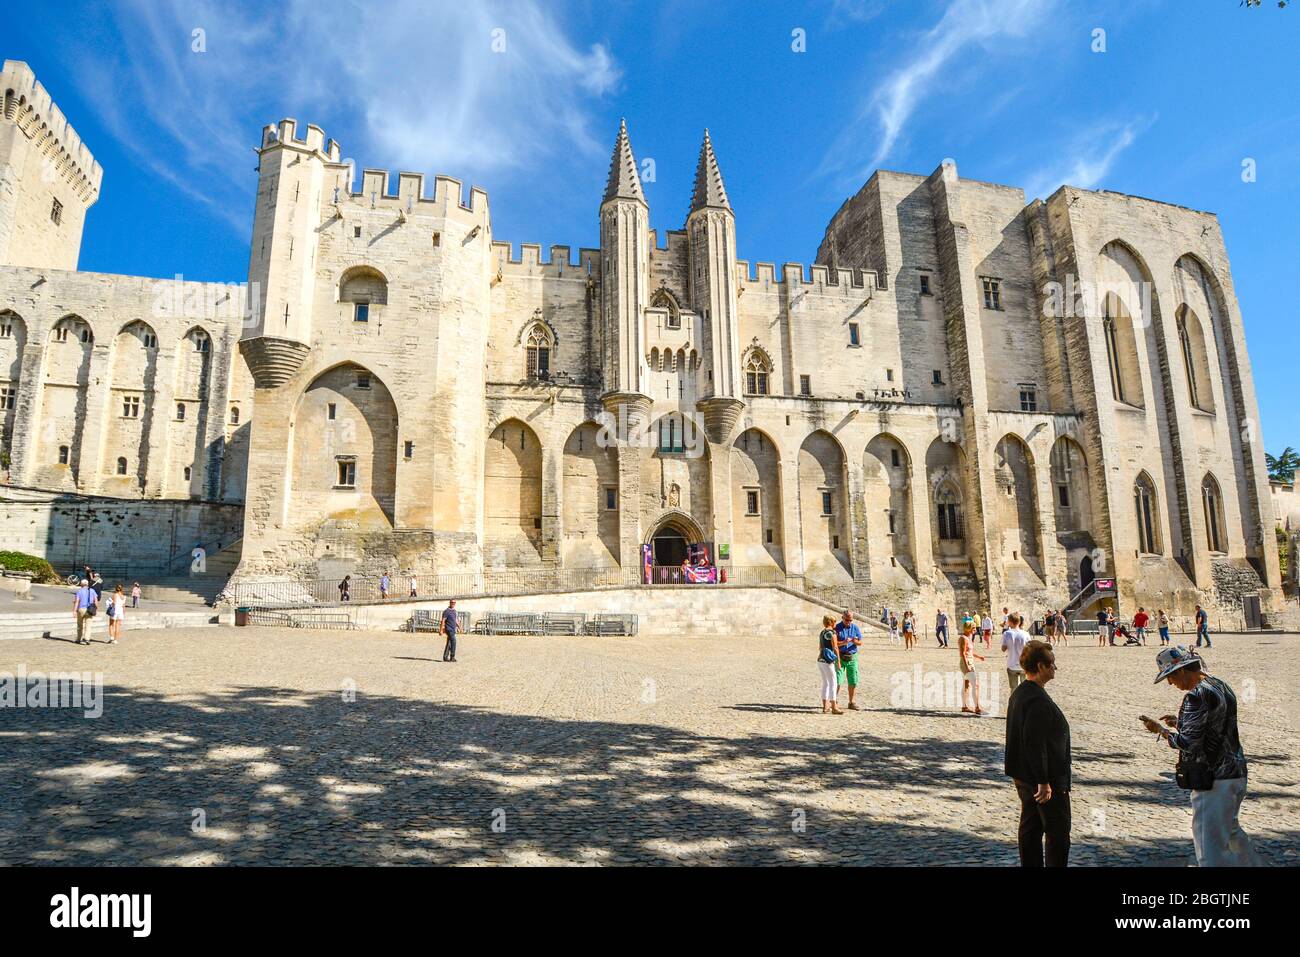 Les touristes se mêlent sur la place devant le Palais des Papes ou le Palais des Papes, un immense château médiéval et forteresse d'Avignon, en France, en Provence Banque D'Images